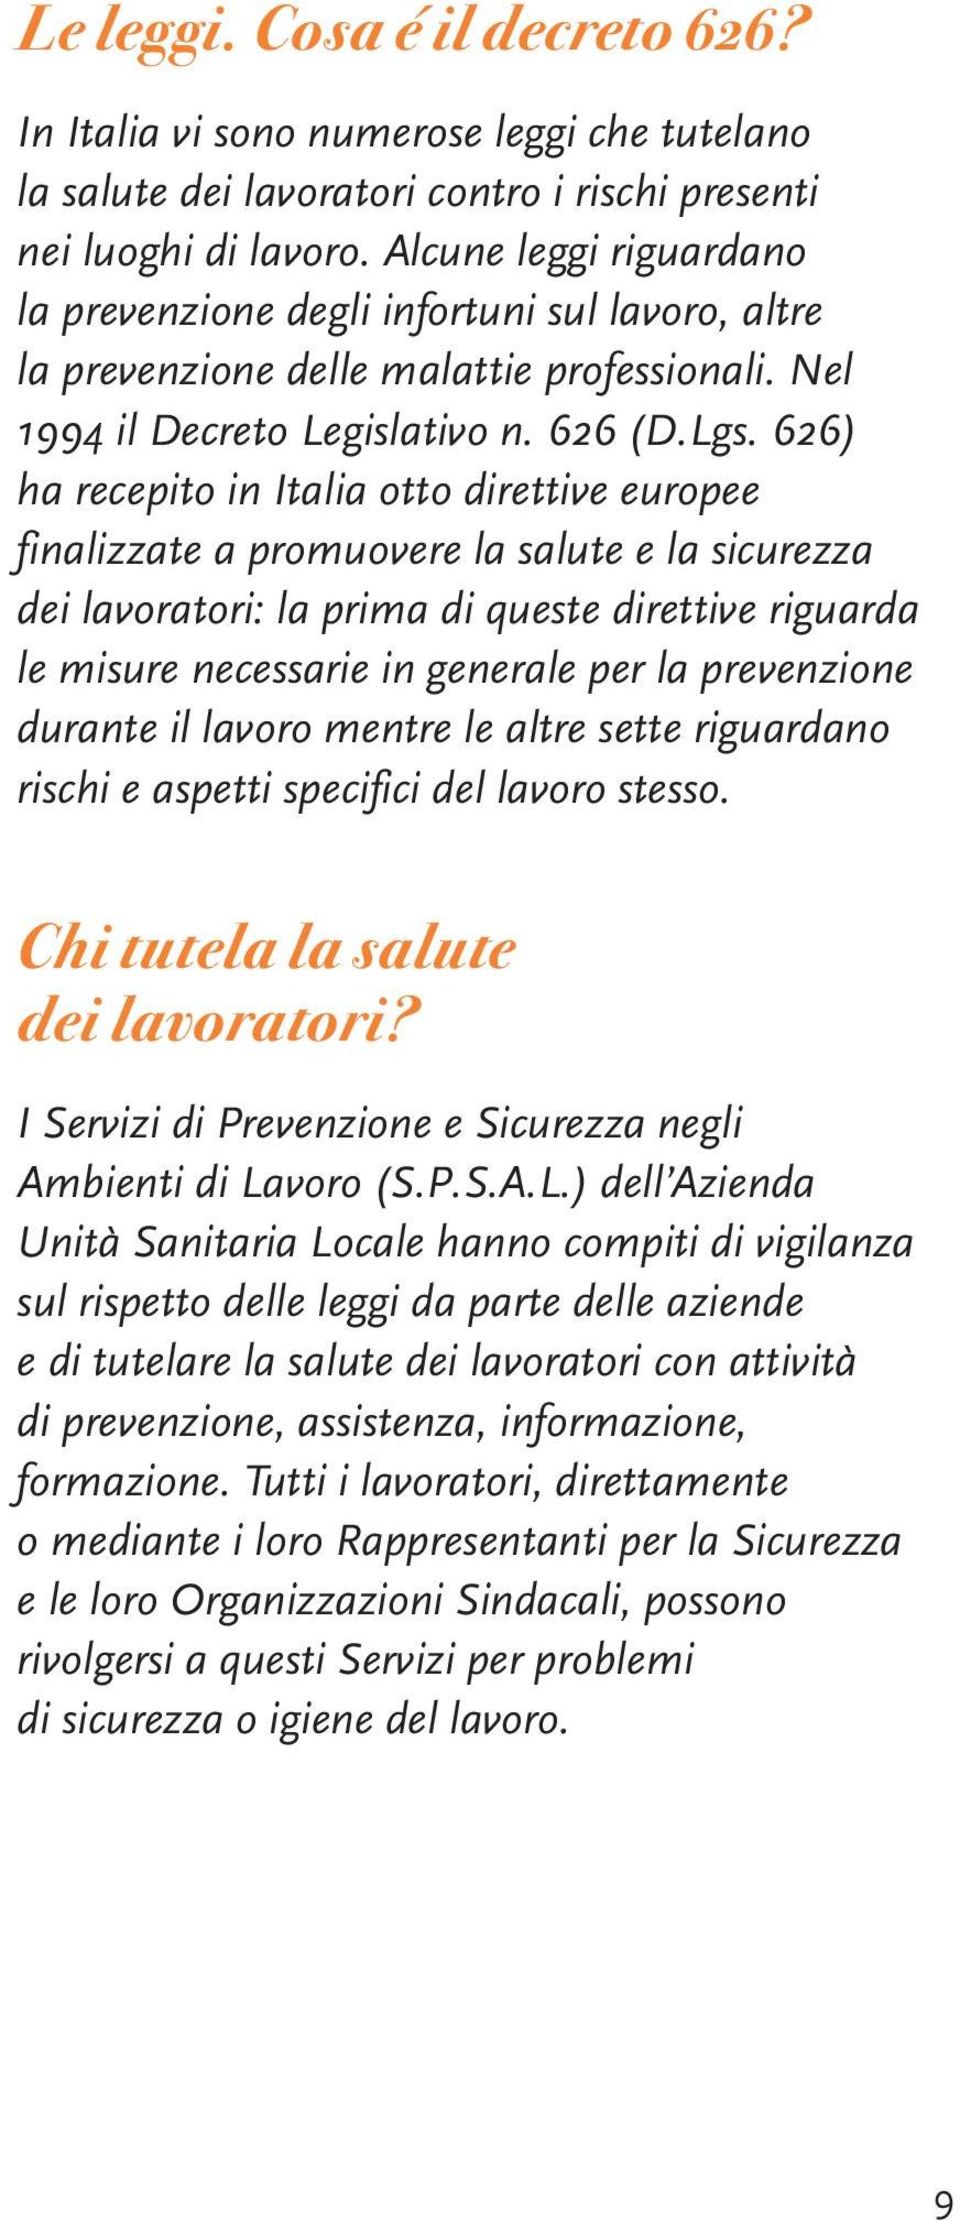 626) ha recepito in Italia otto direttive europee finalizzate a promuovere la salute e la sicurezza dei lavoratori: la prima di queste direttive riguarda le misure necessarie in generale per la